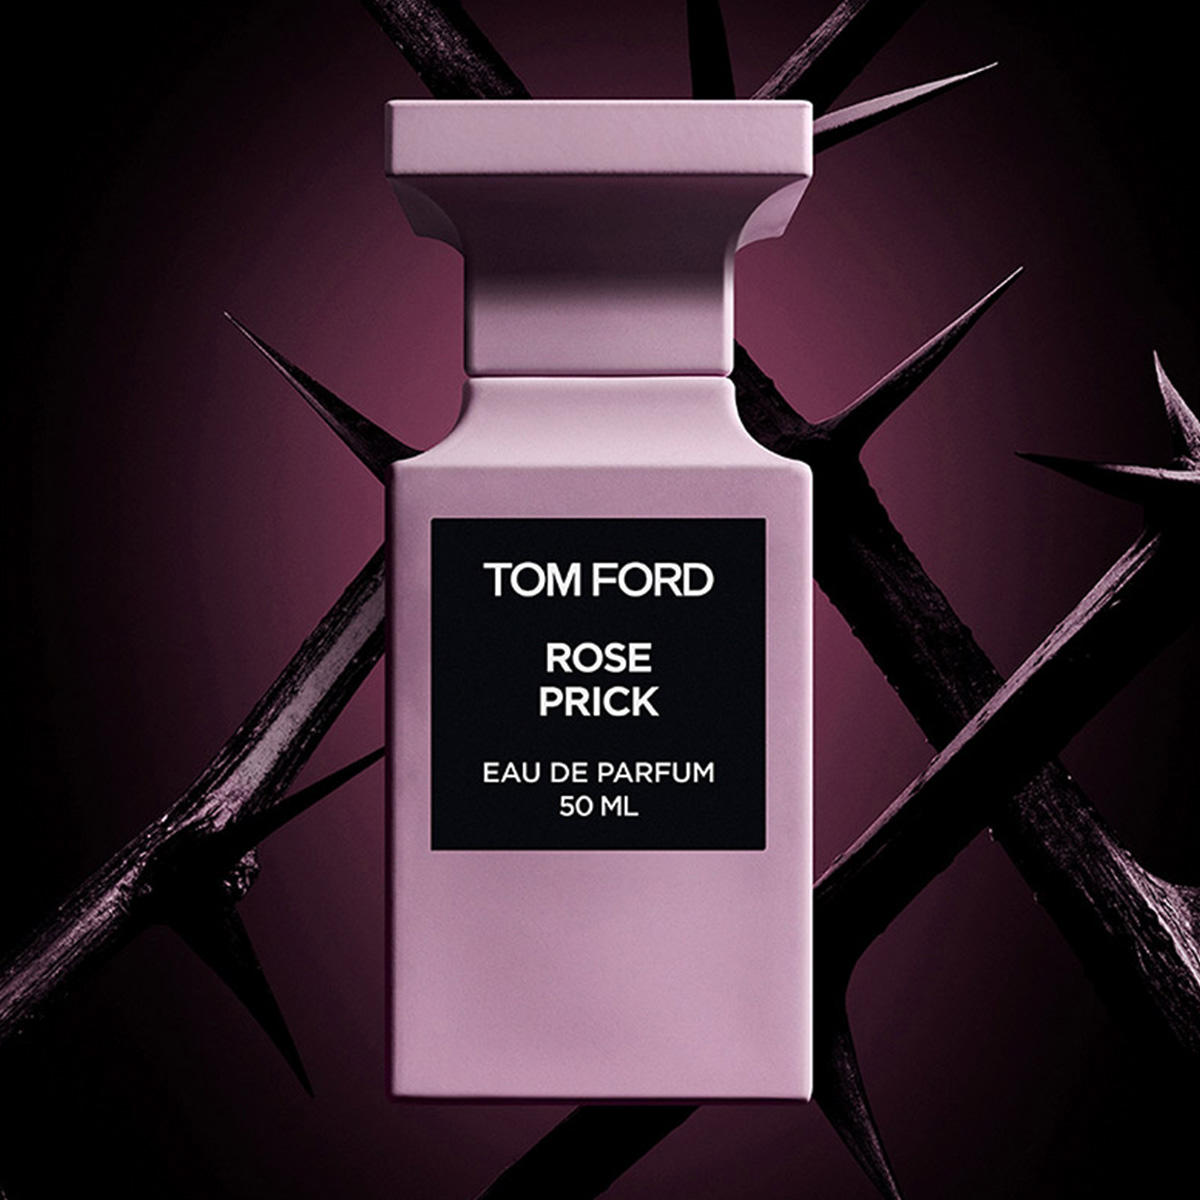 Tom Ford Rose Prick Eau de Parfum 100 ml - 3